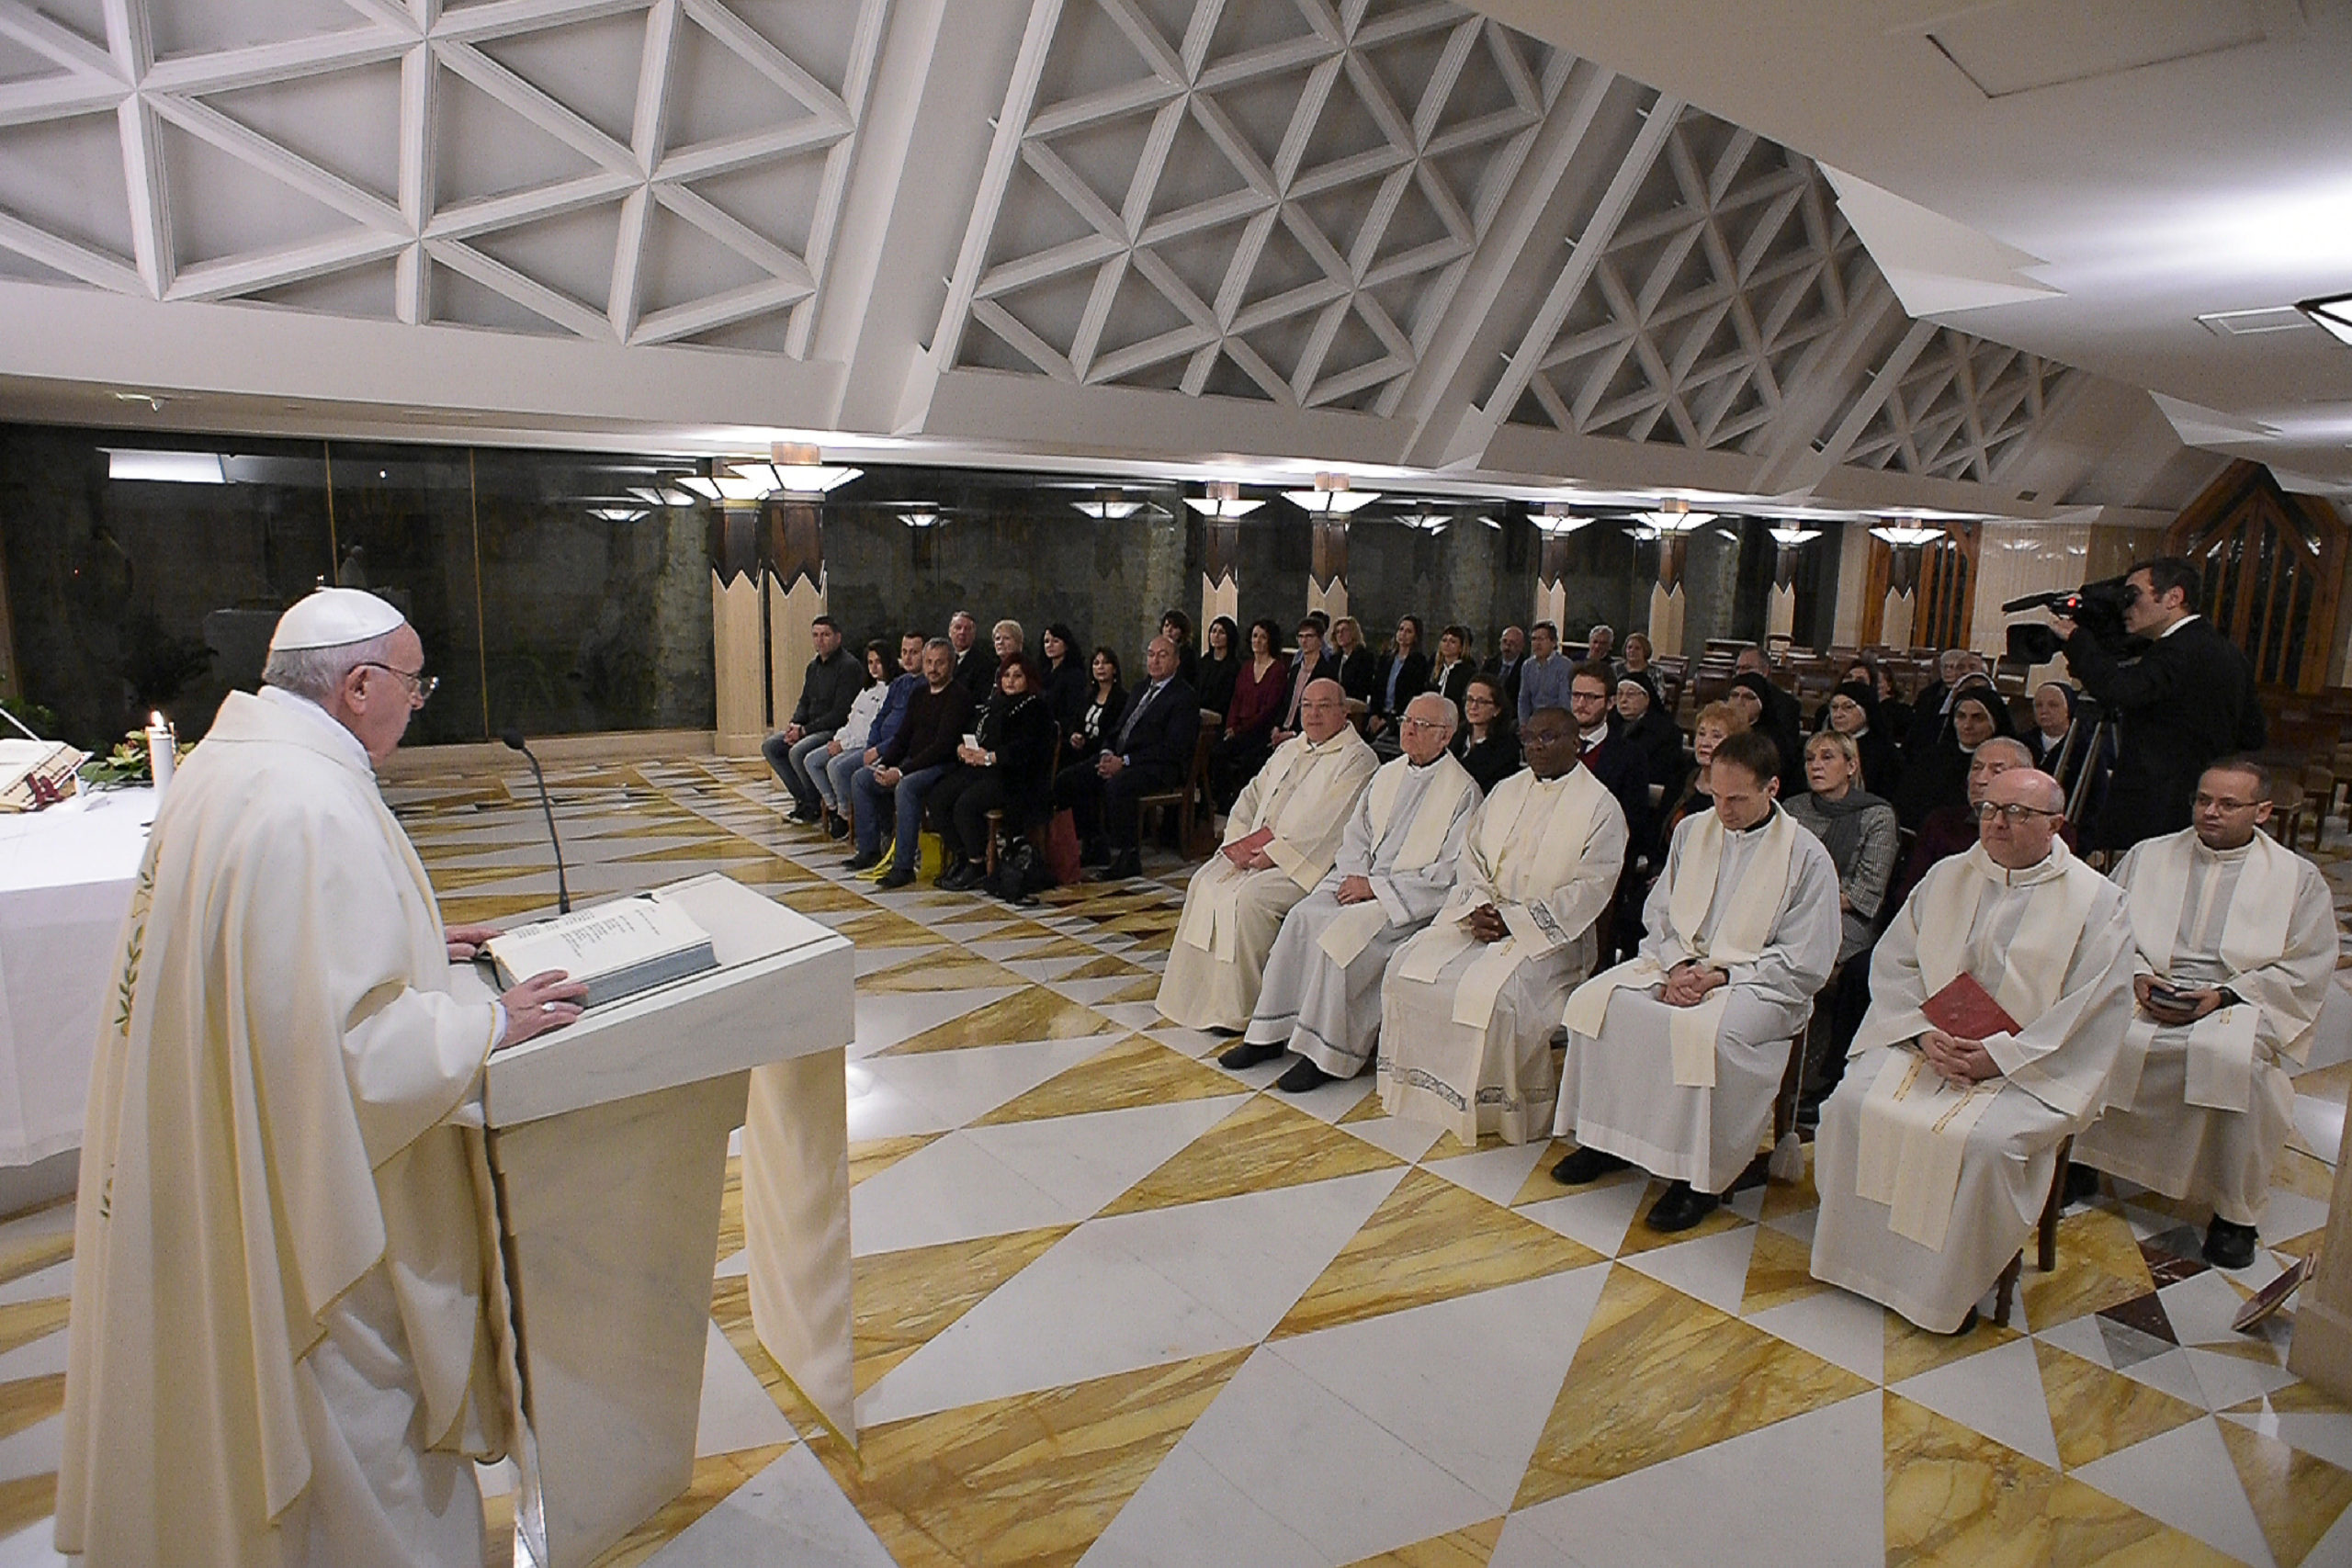 Misa en Santa Marta, 28 enero 2020 © Vatican Media